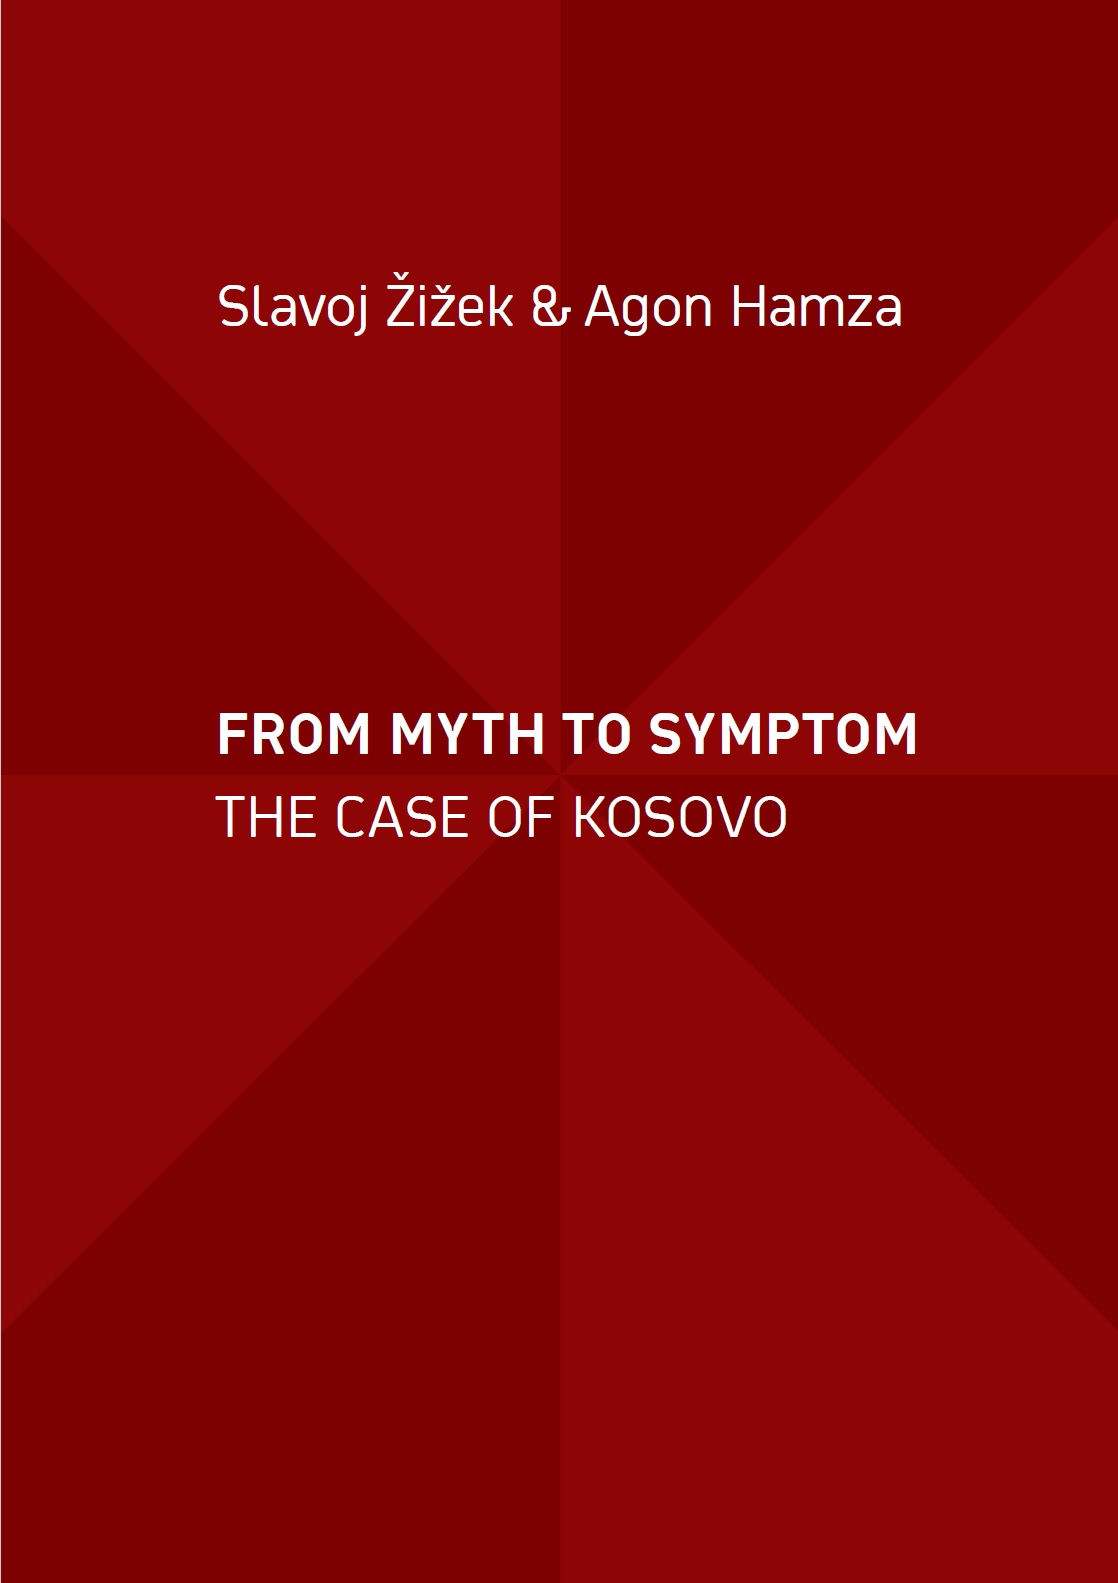 Slavoj-zizek-agon-hamza-from-myth-to-symptom-theoryleaks.jpg